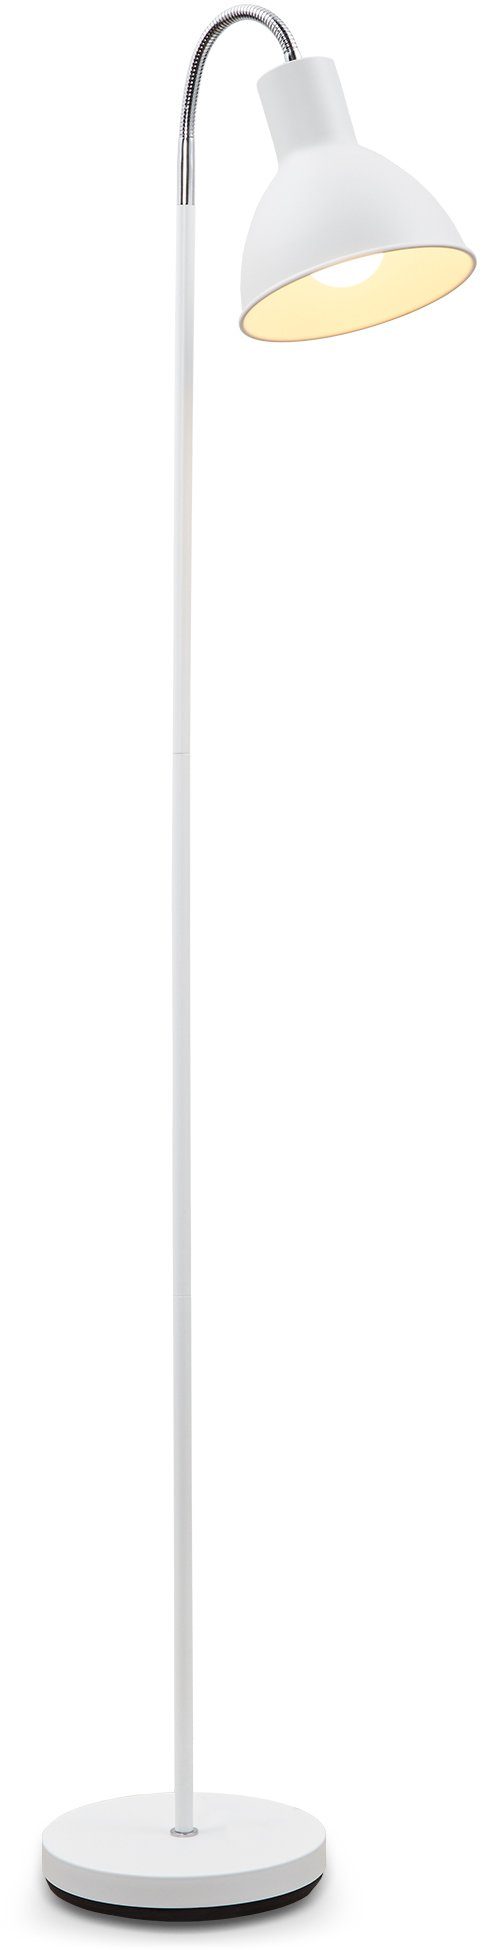 B.K.Licht LED Stehlampe, Warmweiß, Leuchtmittel, Design E27 Industrial ohne Metall schwenkbar Stand-Leuchte Stehleuchte weiß